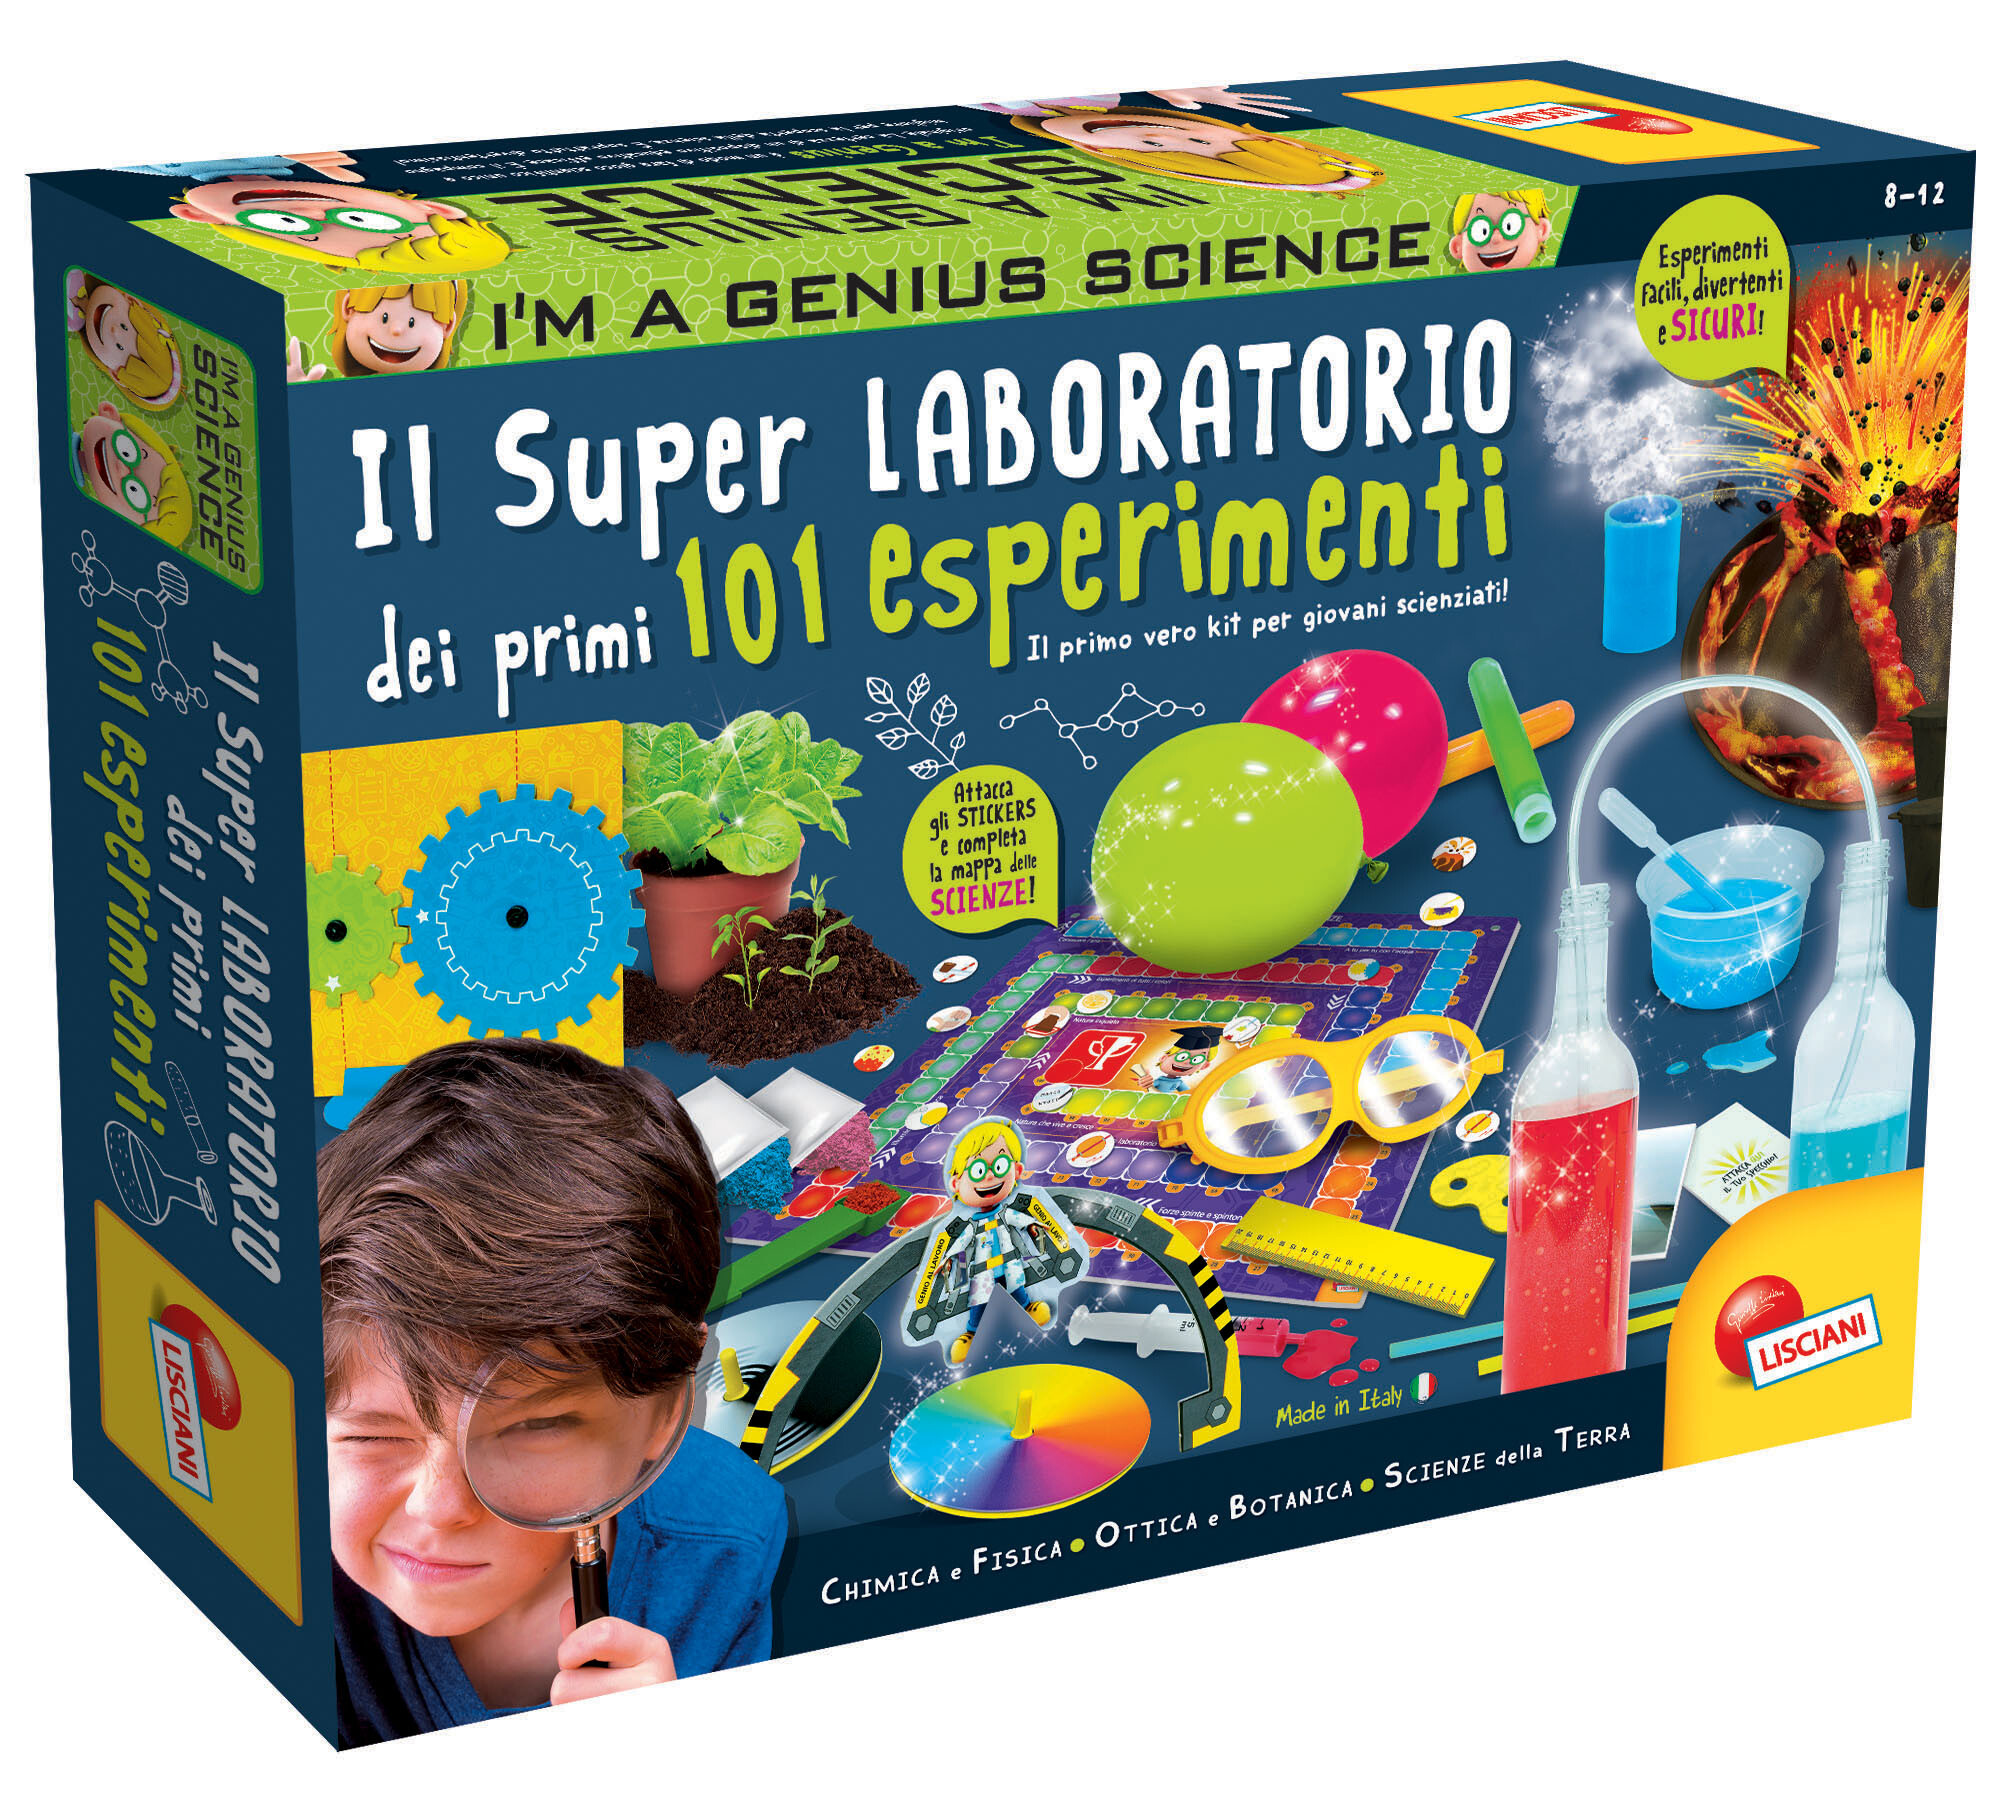 I'm a genius il super laboratorio dei primi 101 esperimenti - LISCIANI